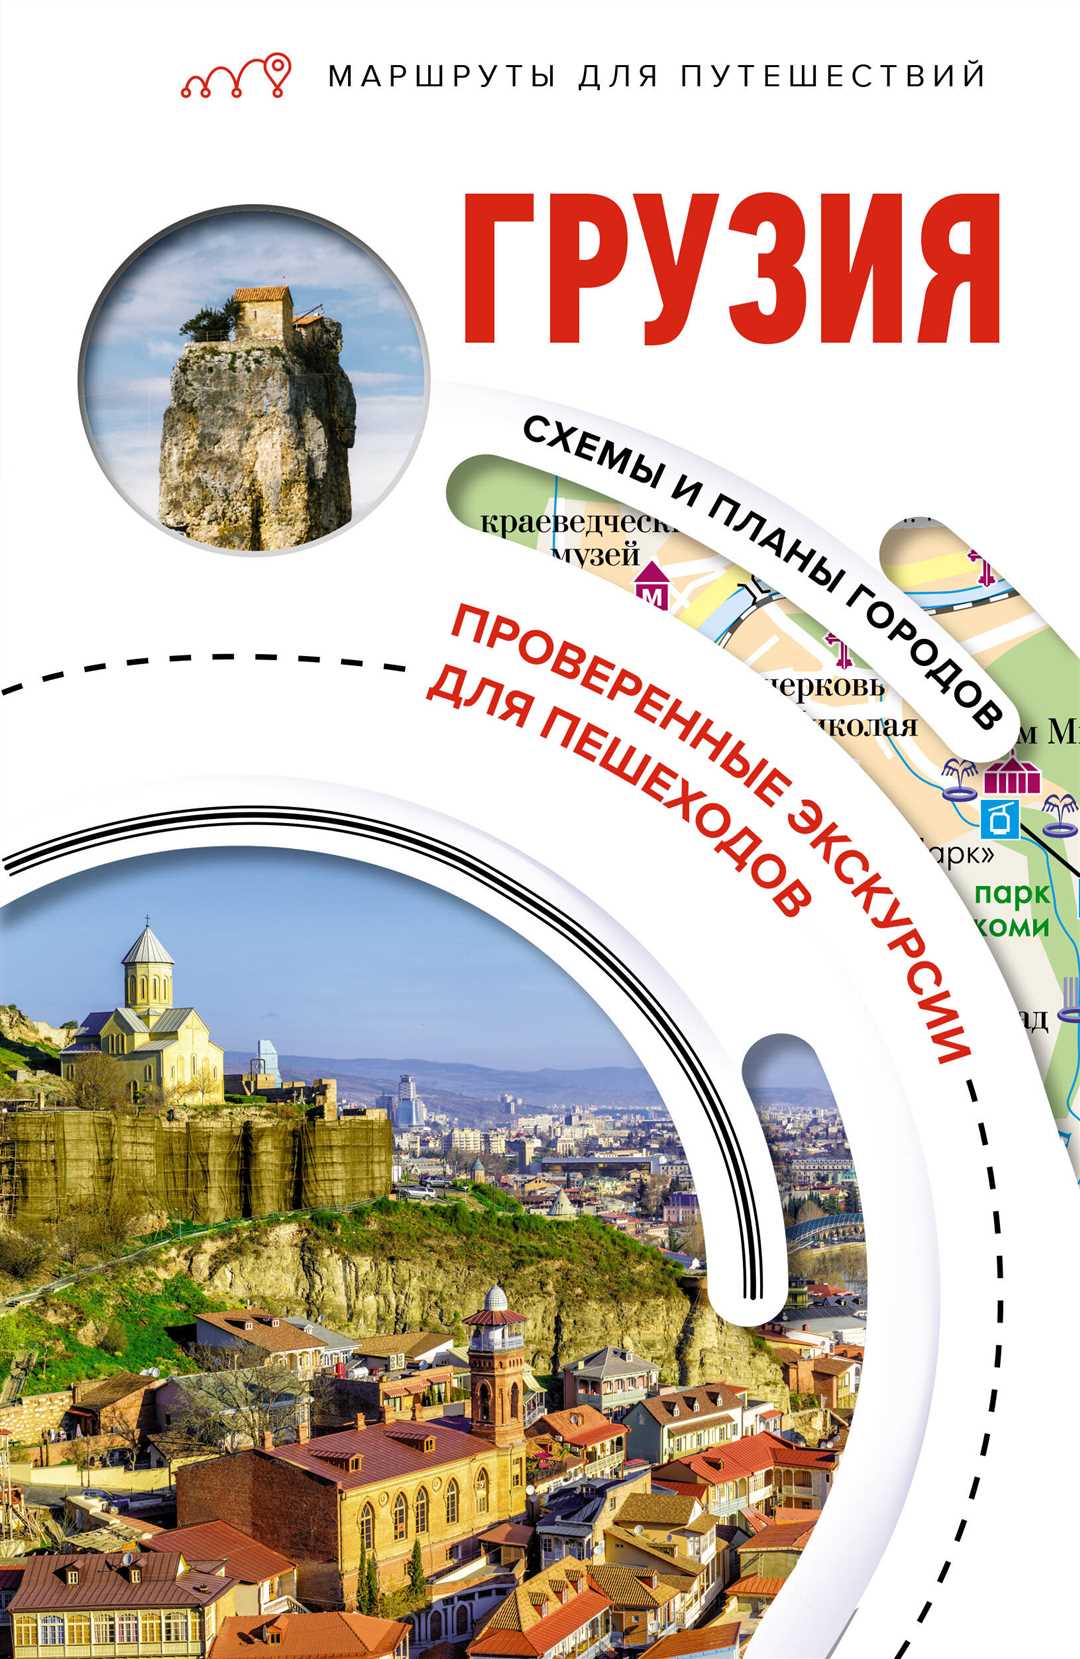 Туризм и краеведение: путешествия по историческим местам и культурным достопримечательностям